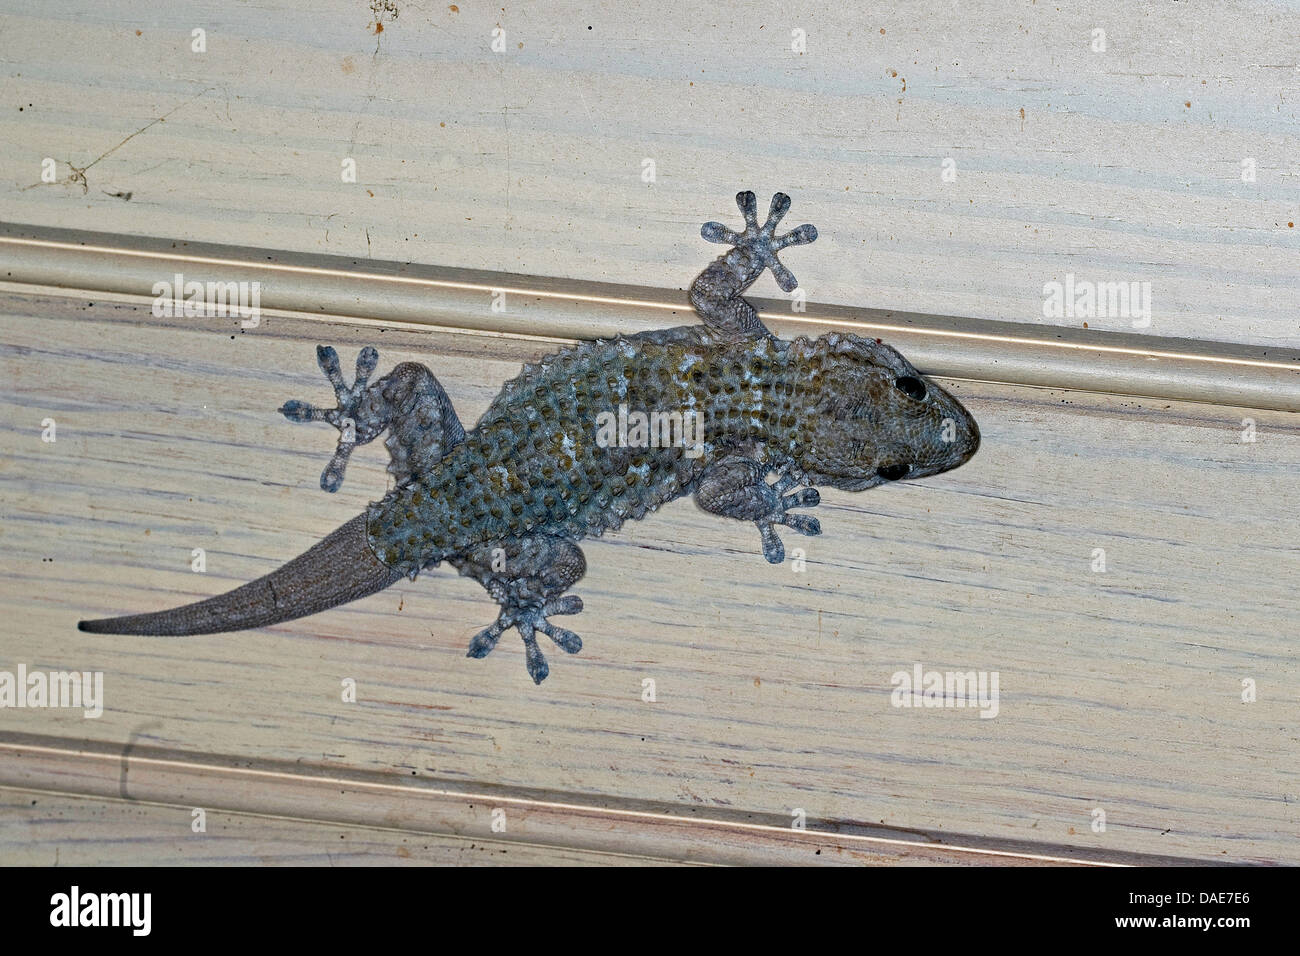 Gemeinsame Wand Gecko, maurischer Gecko, maurischen Wand Gecko, Salamanquesa, Krokodil Gecko, europäische gemeinsame Gecko, Maurita Naca Gecko (Tarentola Mauritanica), sitzt auf einer Decke, Italien Stockfoto